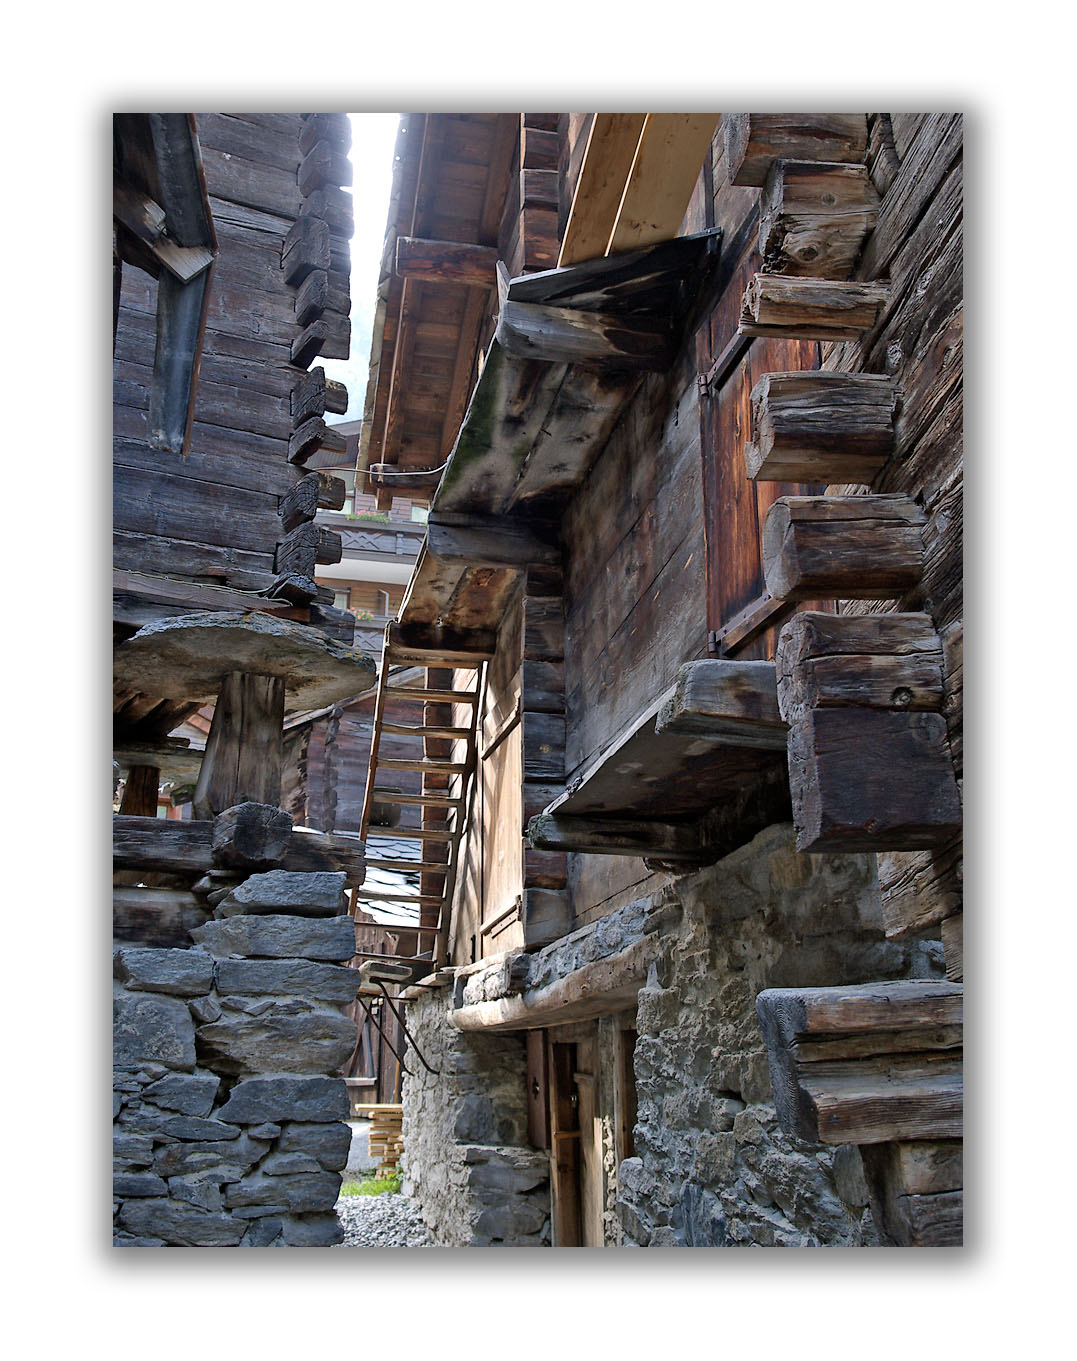 Vieux village de Zermatt